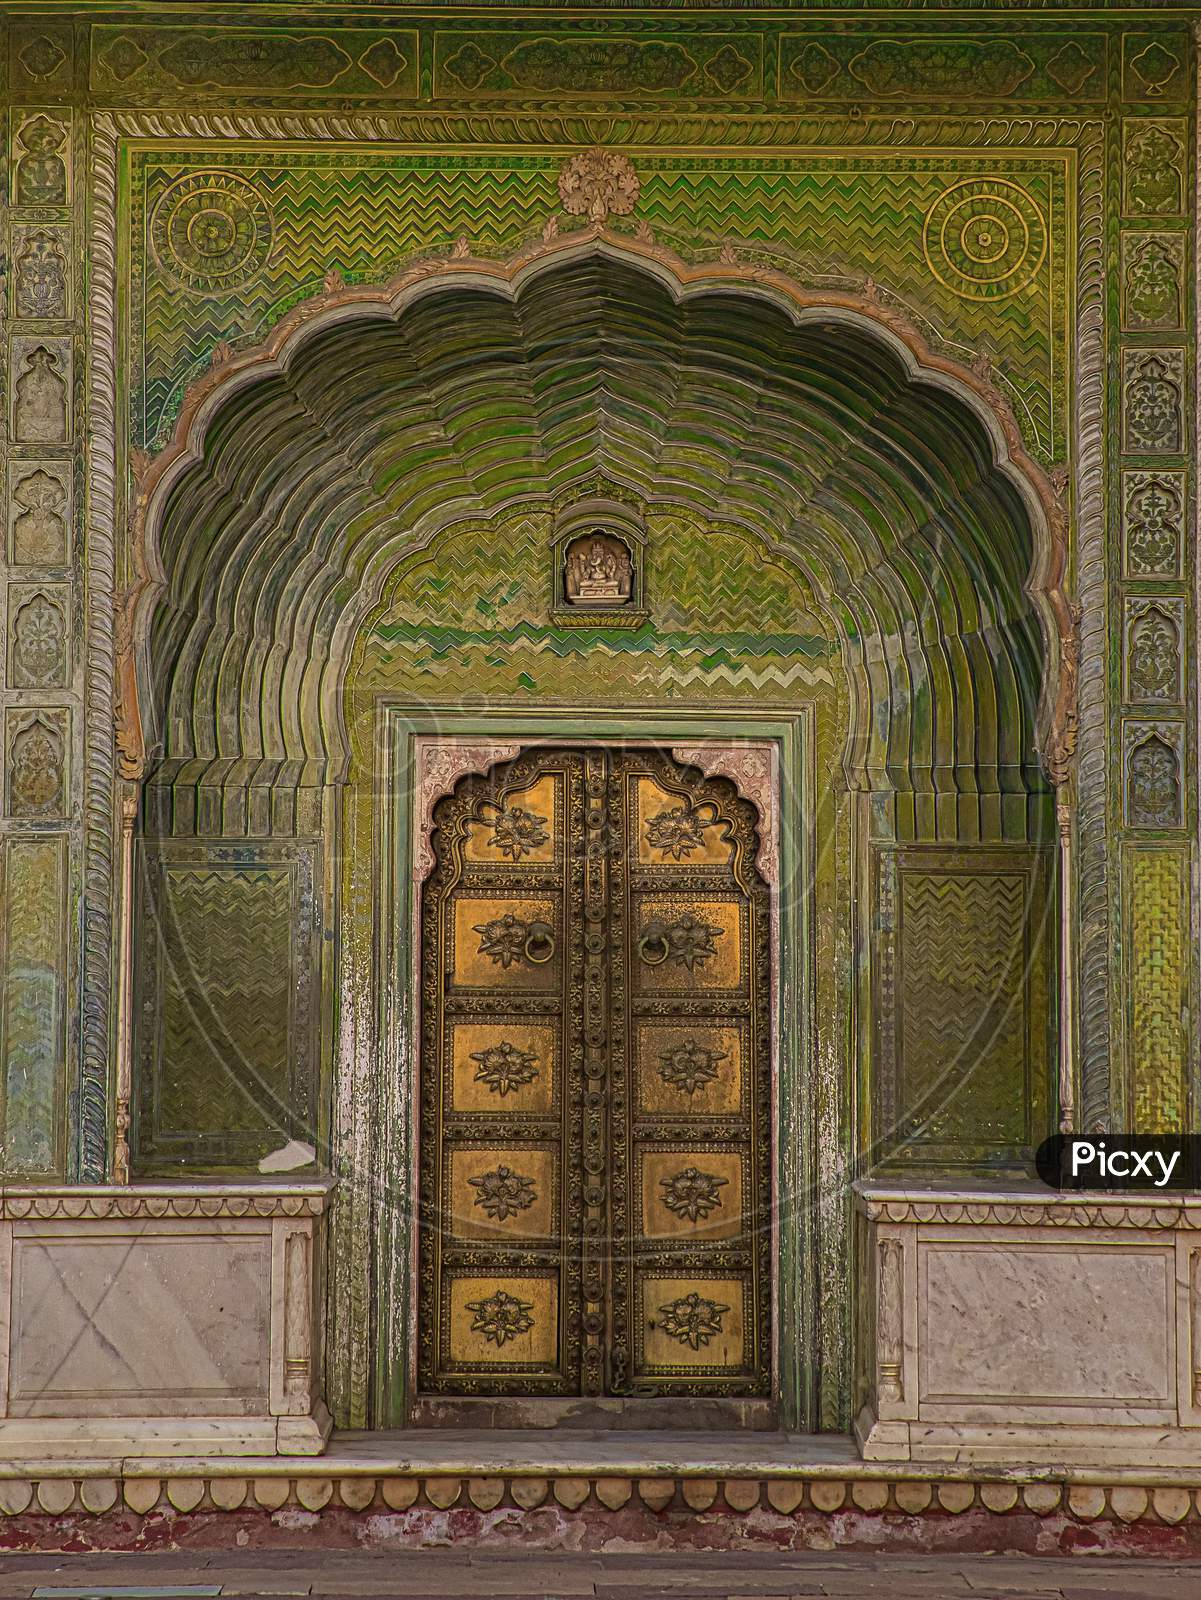 Beautiful doors at Jaipur, Rajasthan